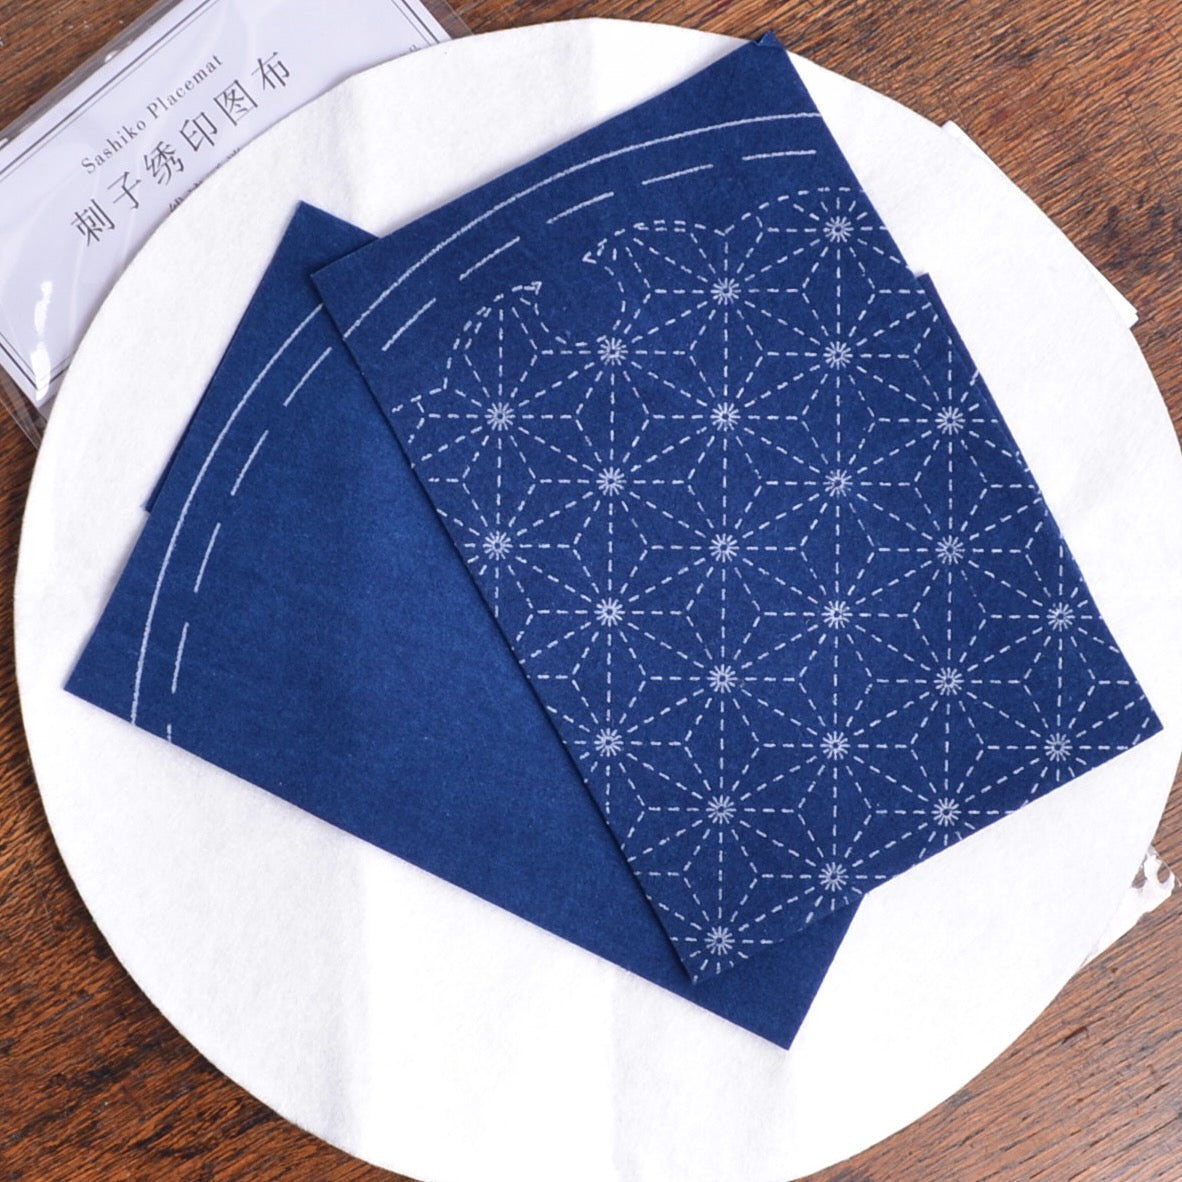 Sashiko Kit, Hemp Leaf Table Mat Kit - A Threaded Needle